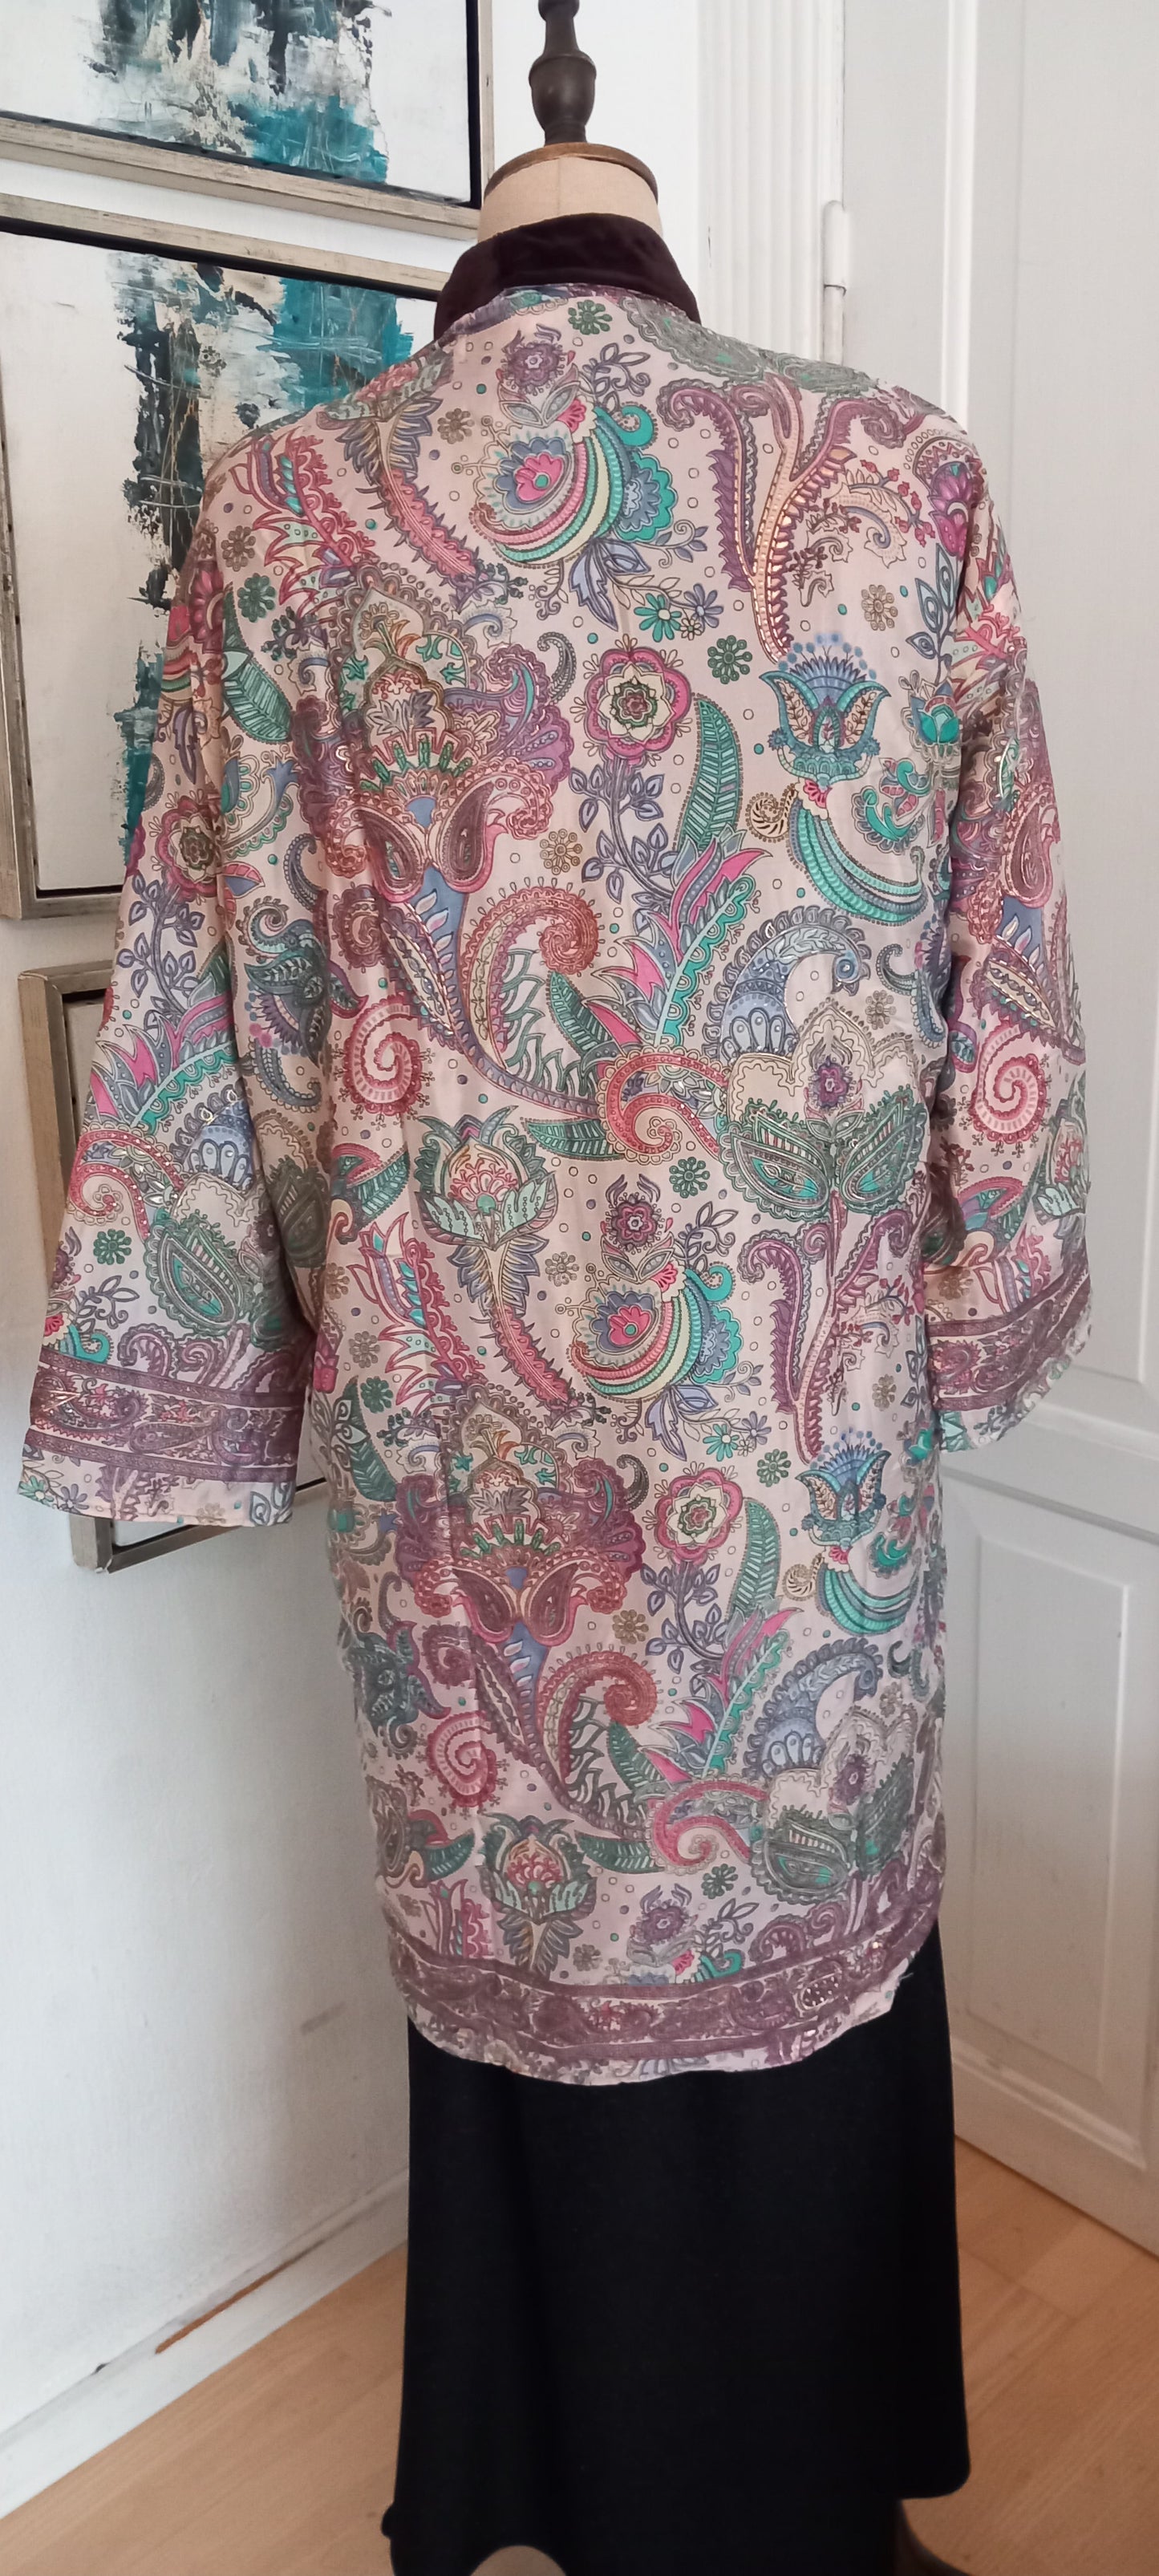 Lang og eksklusiv håndlavet silke/velour Kimono, 2